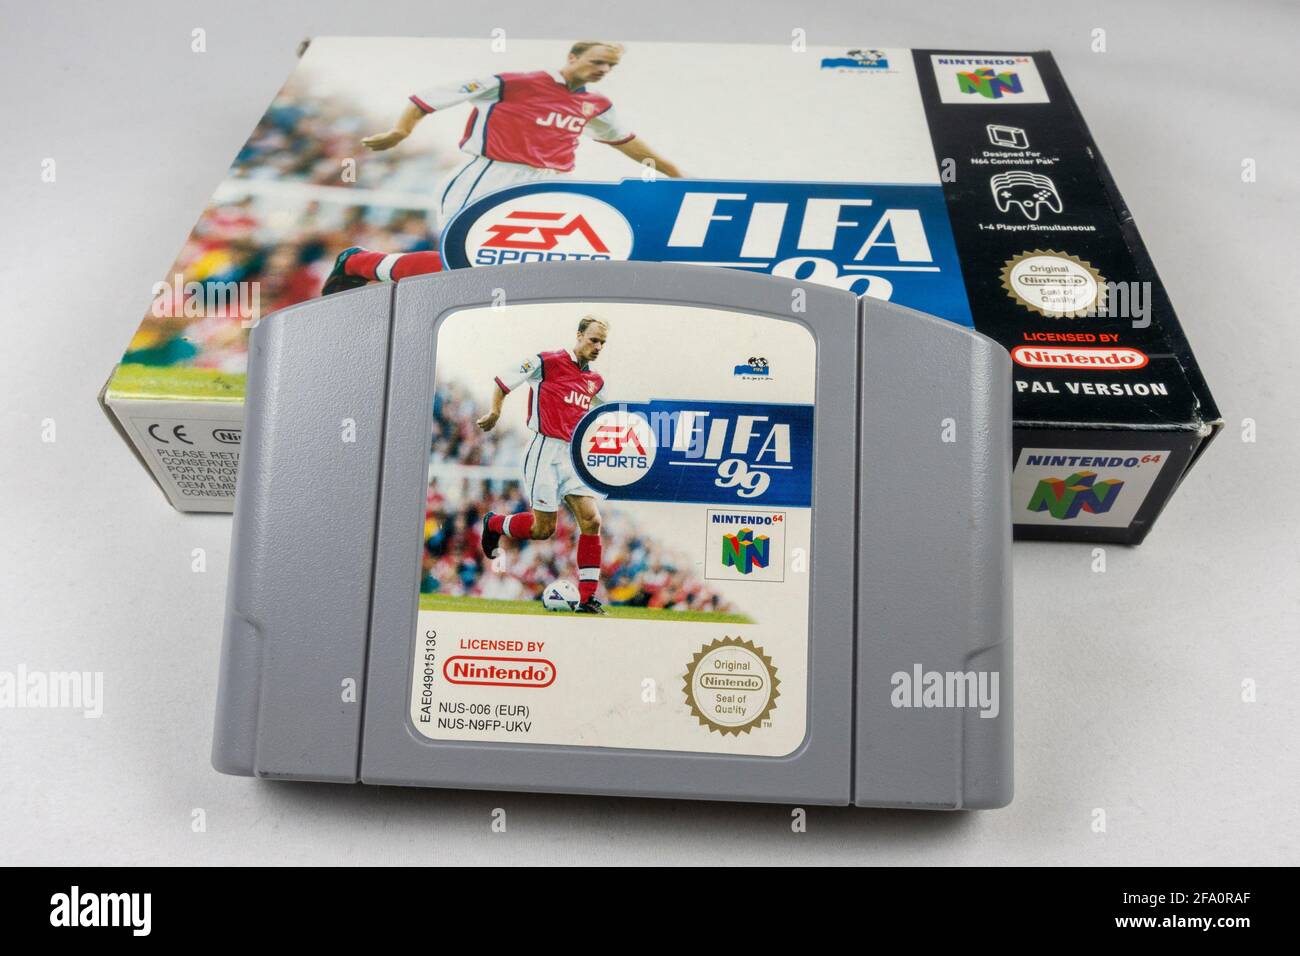 La cartouche et la boîte de jeux vidéo FIFA '99 Nintendo 64 ou N64, une console de jeux vidéo de cinquième génération lancée en 1996 au Japon. Banque D'Images